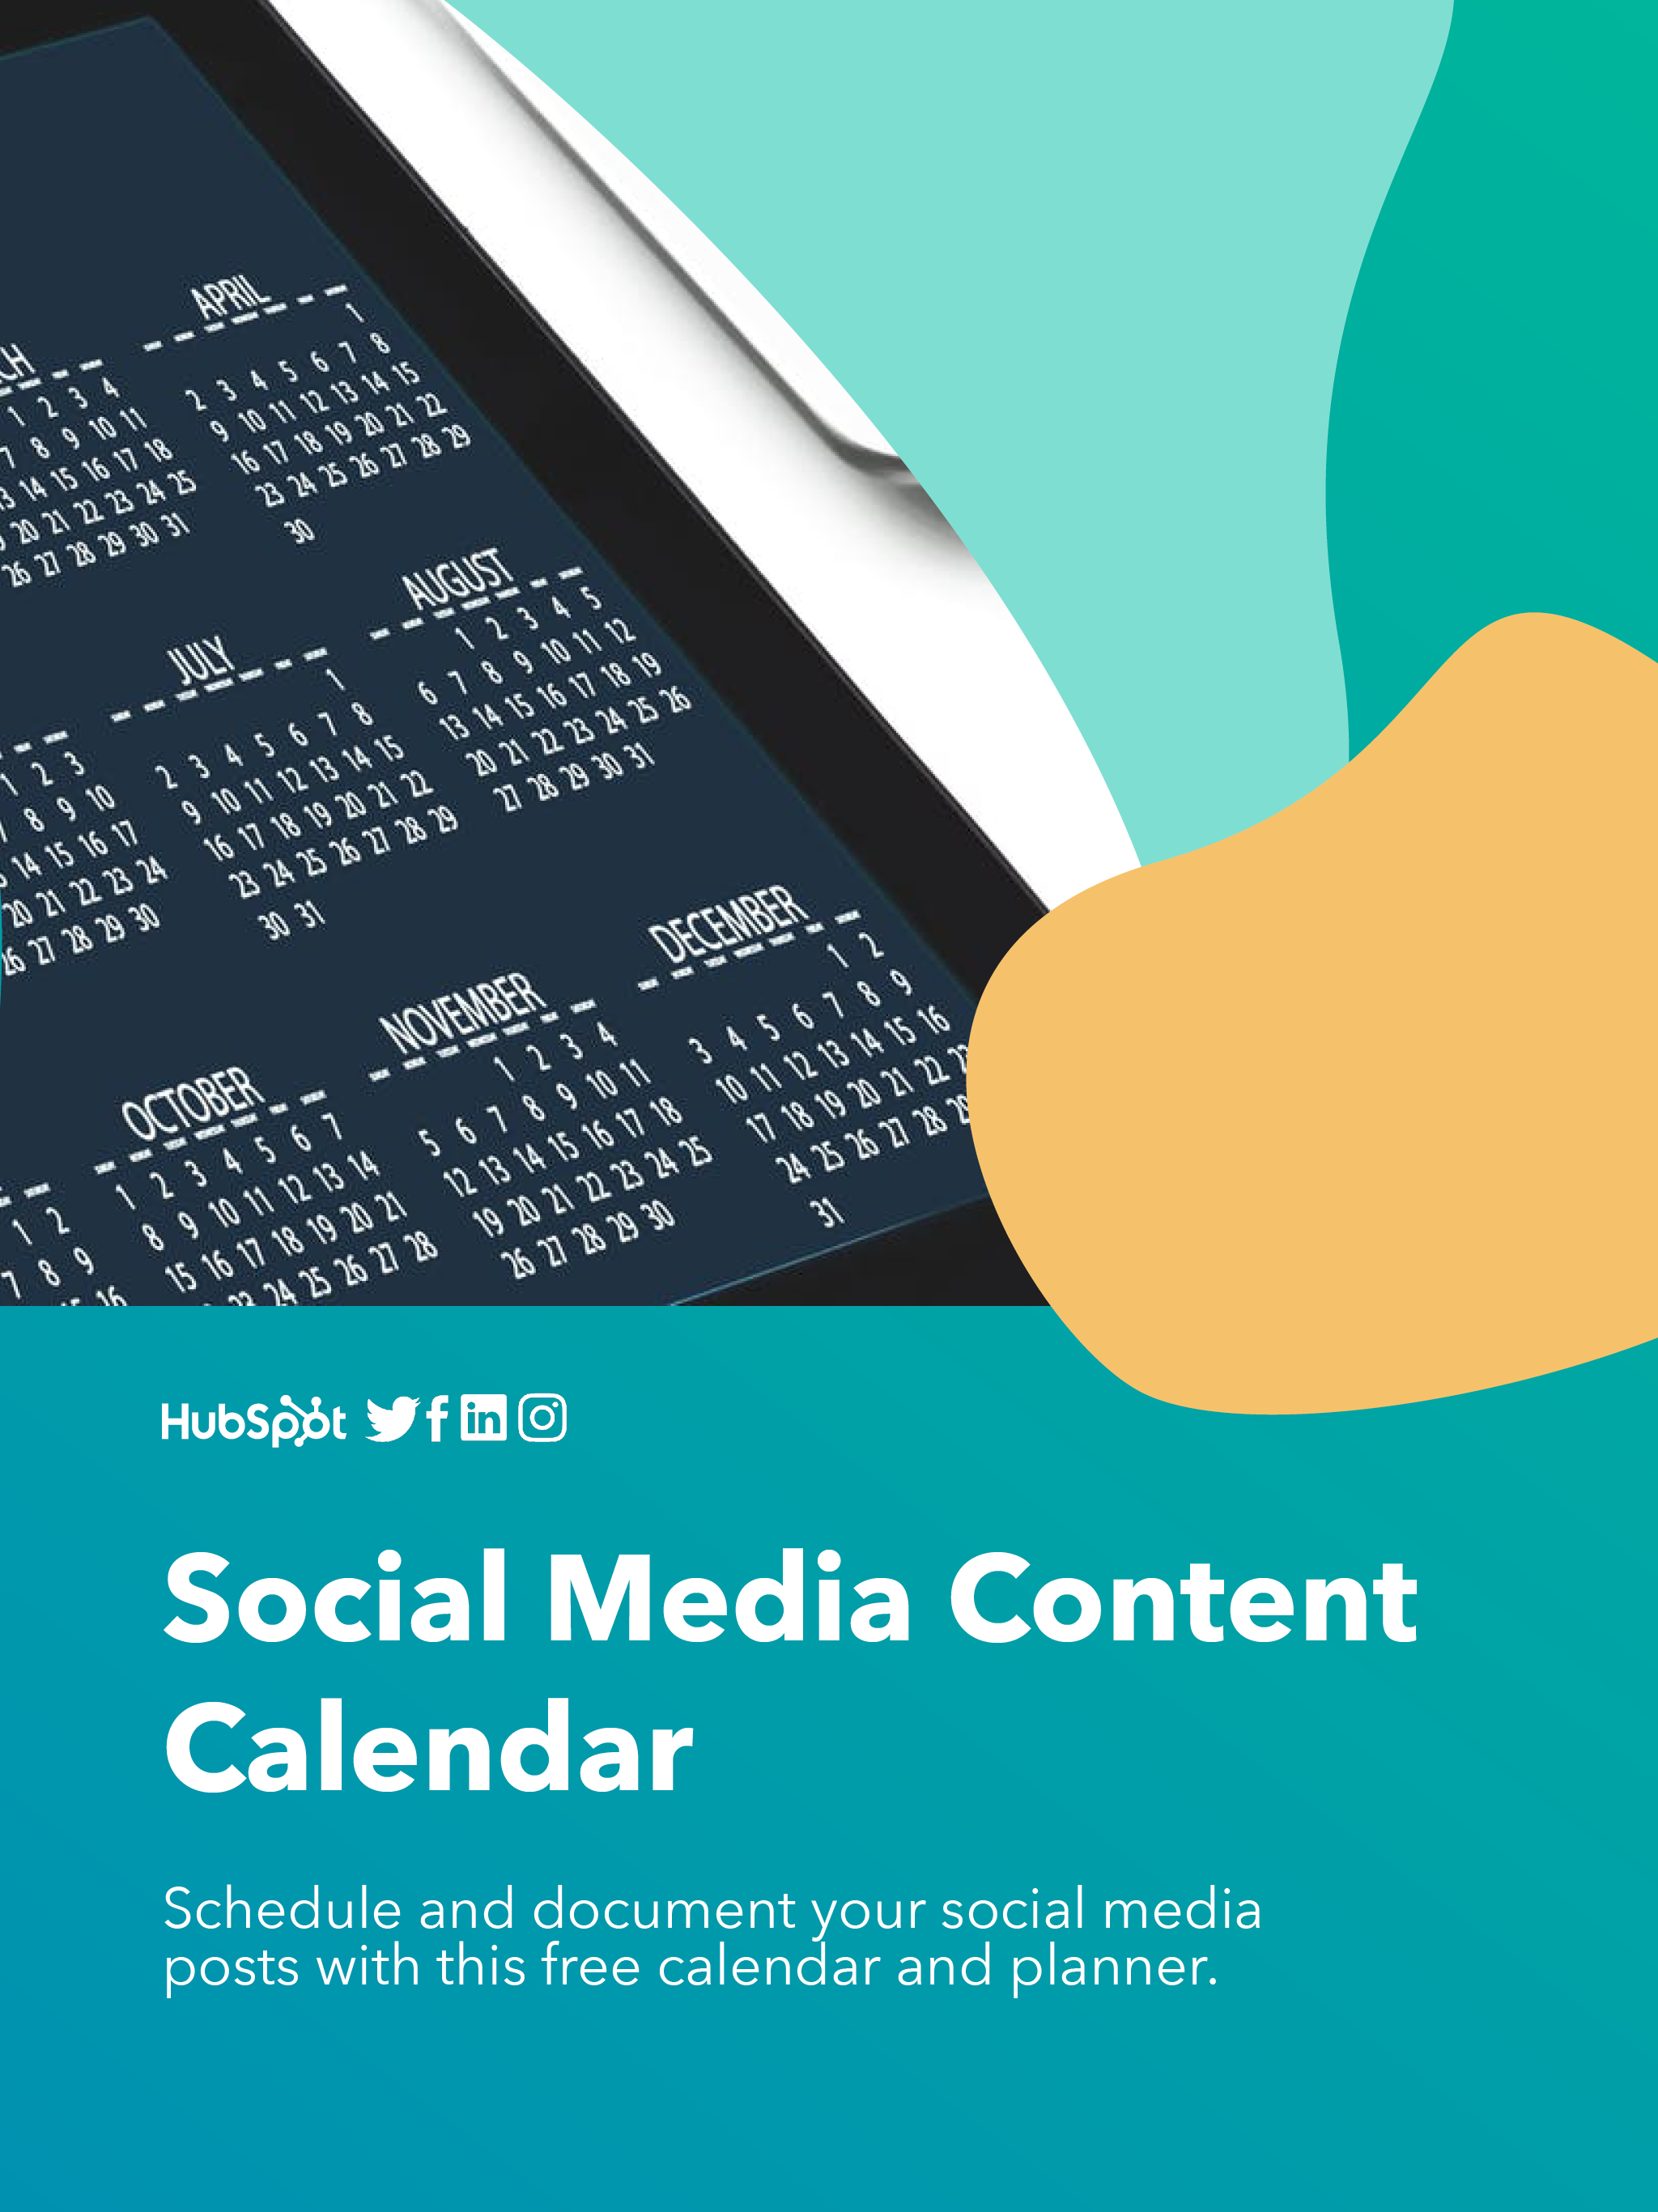 hubspot social media content calendar: cover page